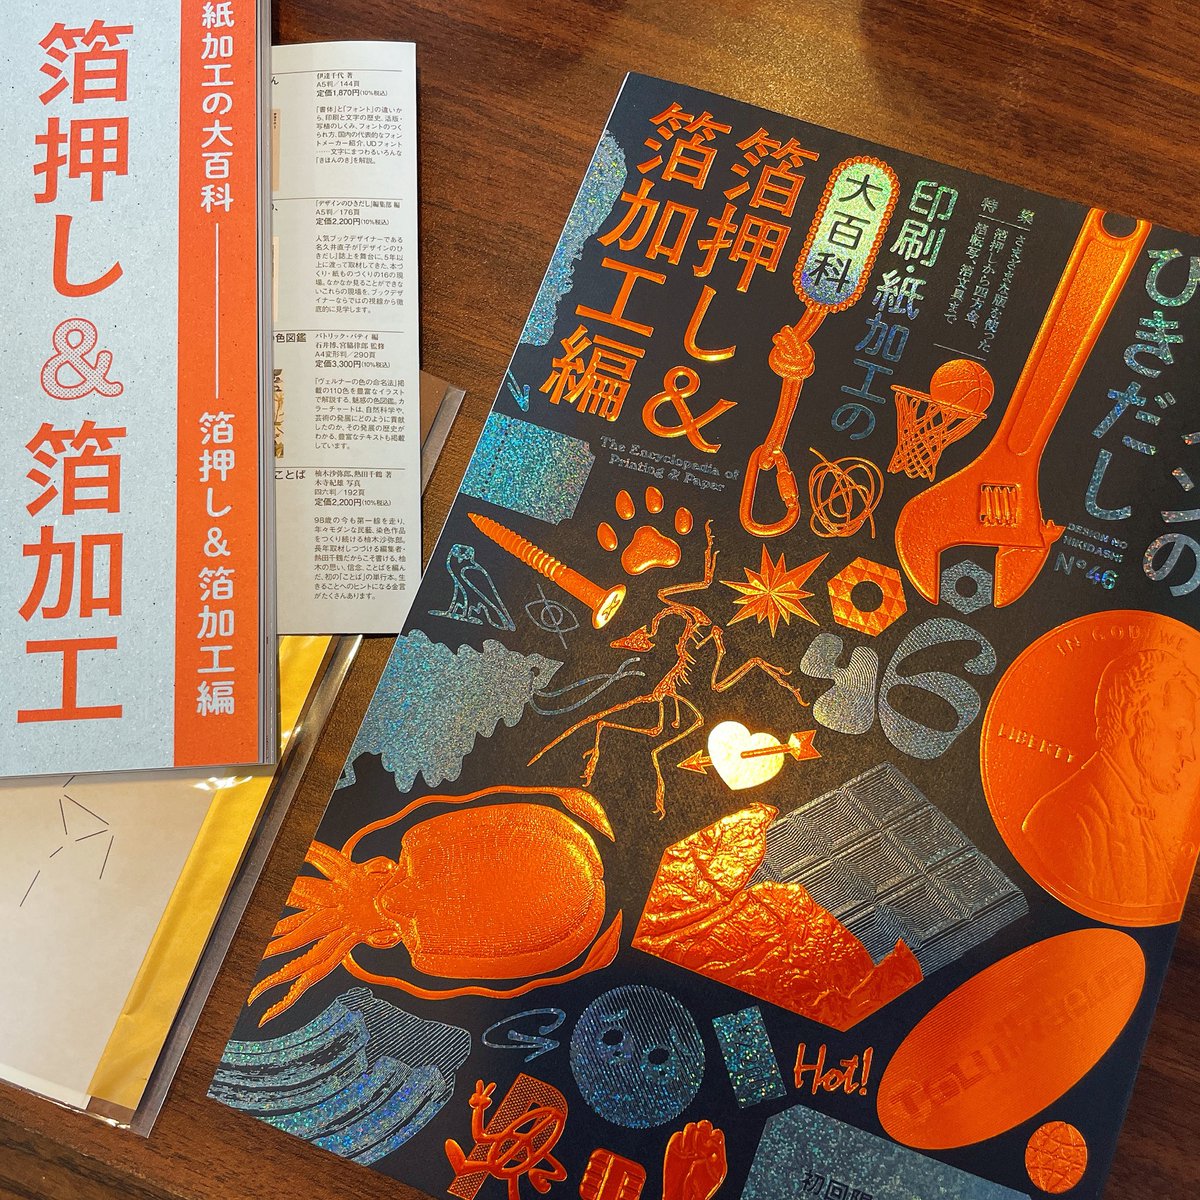 「#デザインのひきだし 46 近くの本屋さんで予約して受け取ってきた!イカすのが来」|福田あやはな👹平家本通販中のイラスト